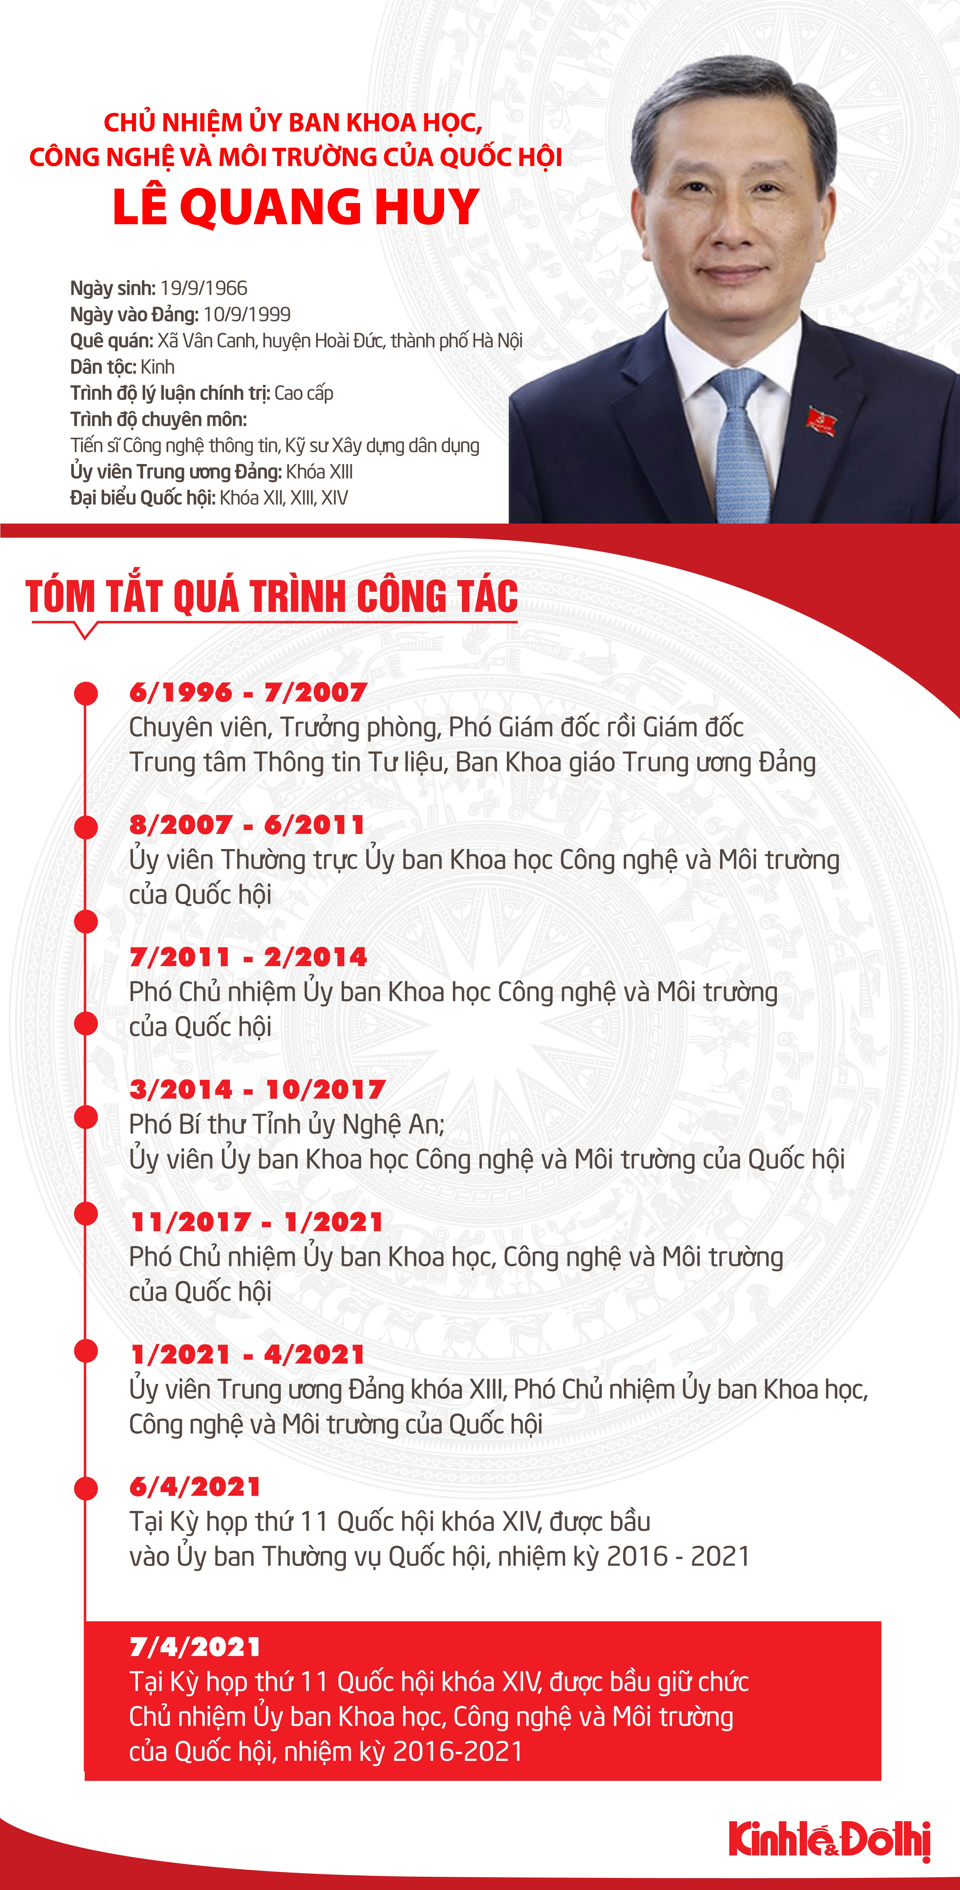 [Infographic] Tóm tắt quá trình công tác của Chủ nhiệm Ủy ban Khoa học, Công nghệ và Môi trường của Quốc hội Lê Quang Huy - Ảnh 1